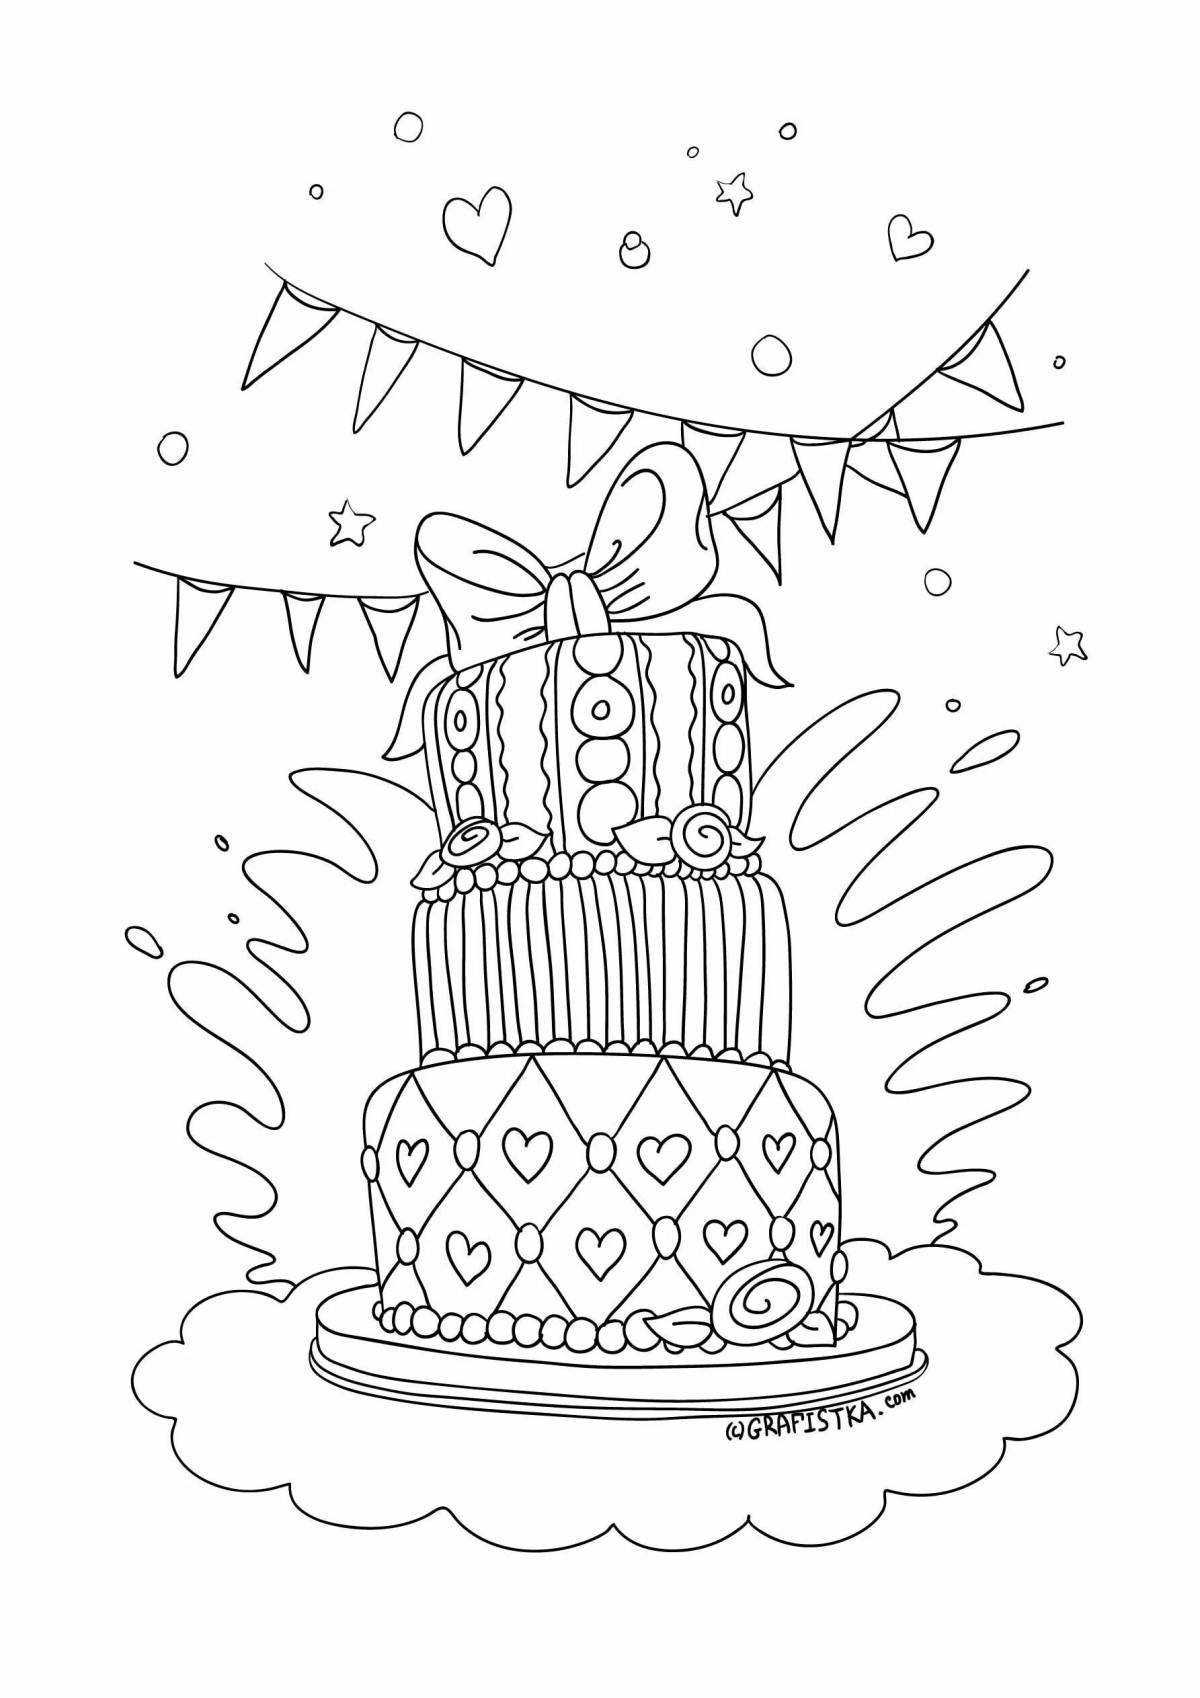 Игривая страница раскраски торта ко дню рождения